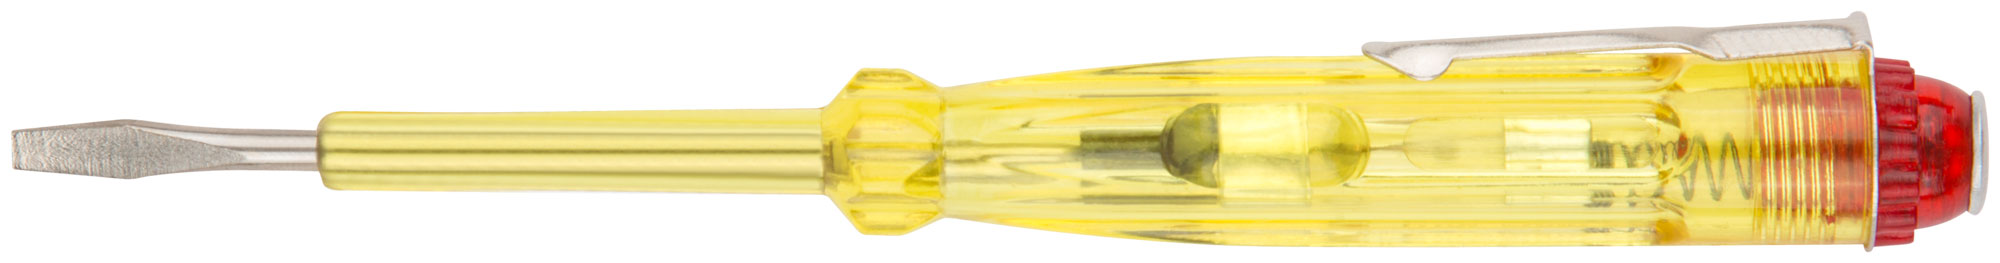 Отвертка индикаторная, желтая ручка 100 - 500 В, 140 мм КУРС 56501 индикаторная отвертка курс